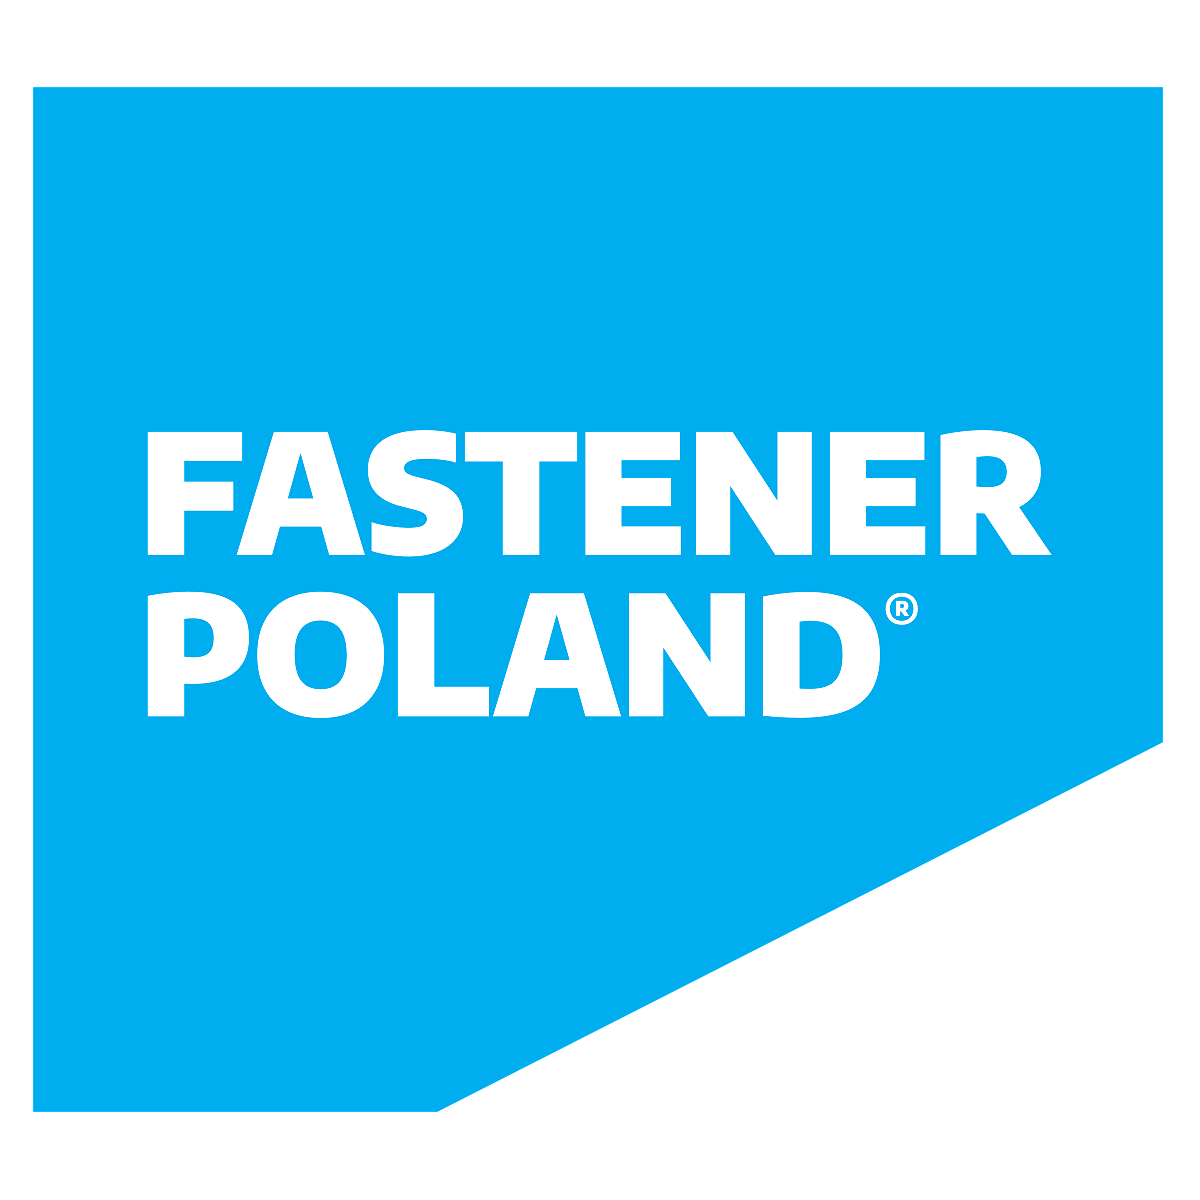 波兰克拉科夫国际五金工具及紧固件展览会logo